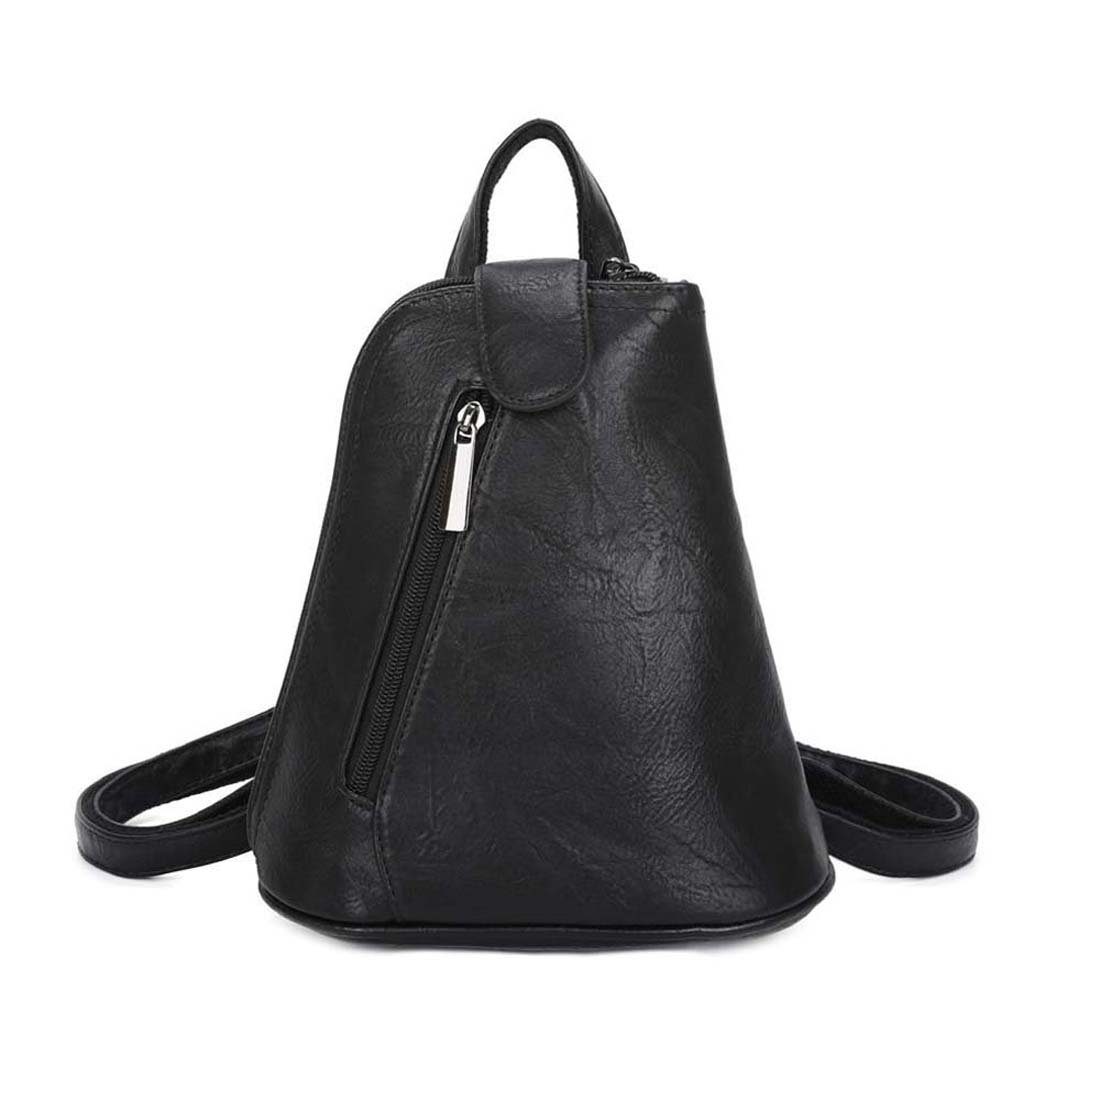 ITALYSHOP24 Rucksack tragbar Handtasche Rucksack, Damen Schultertasche kleiner / Schwarz Umhängetasche Tasche Crossover